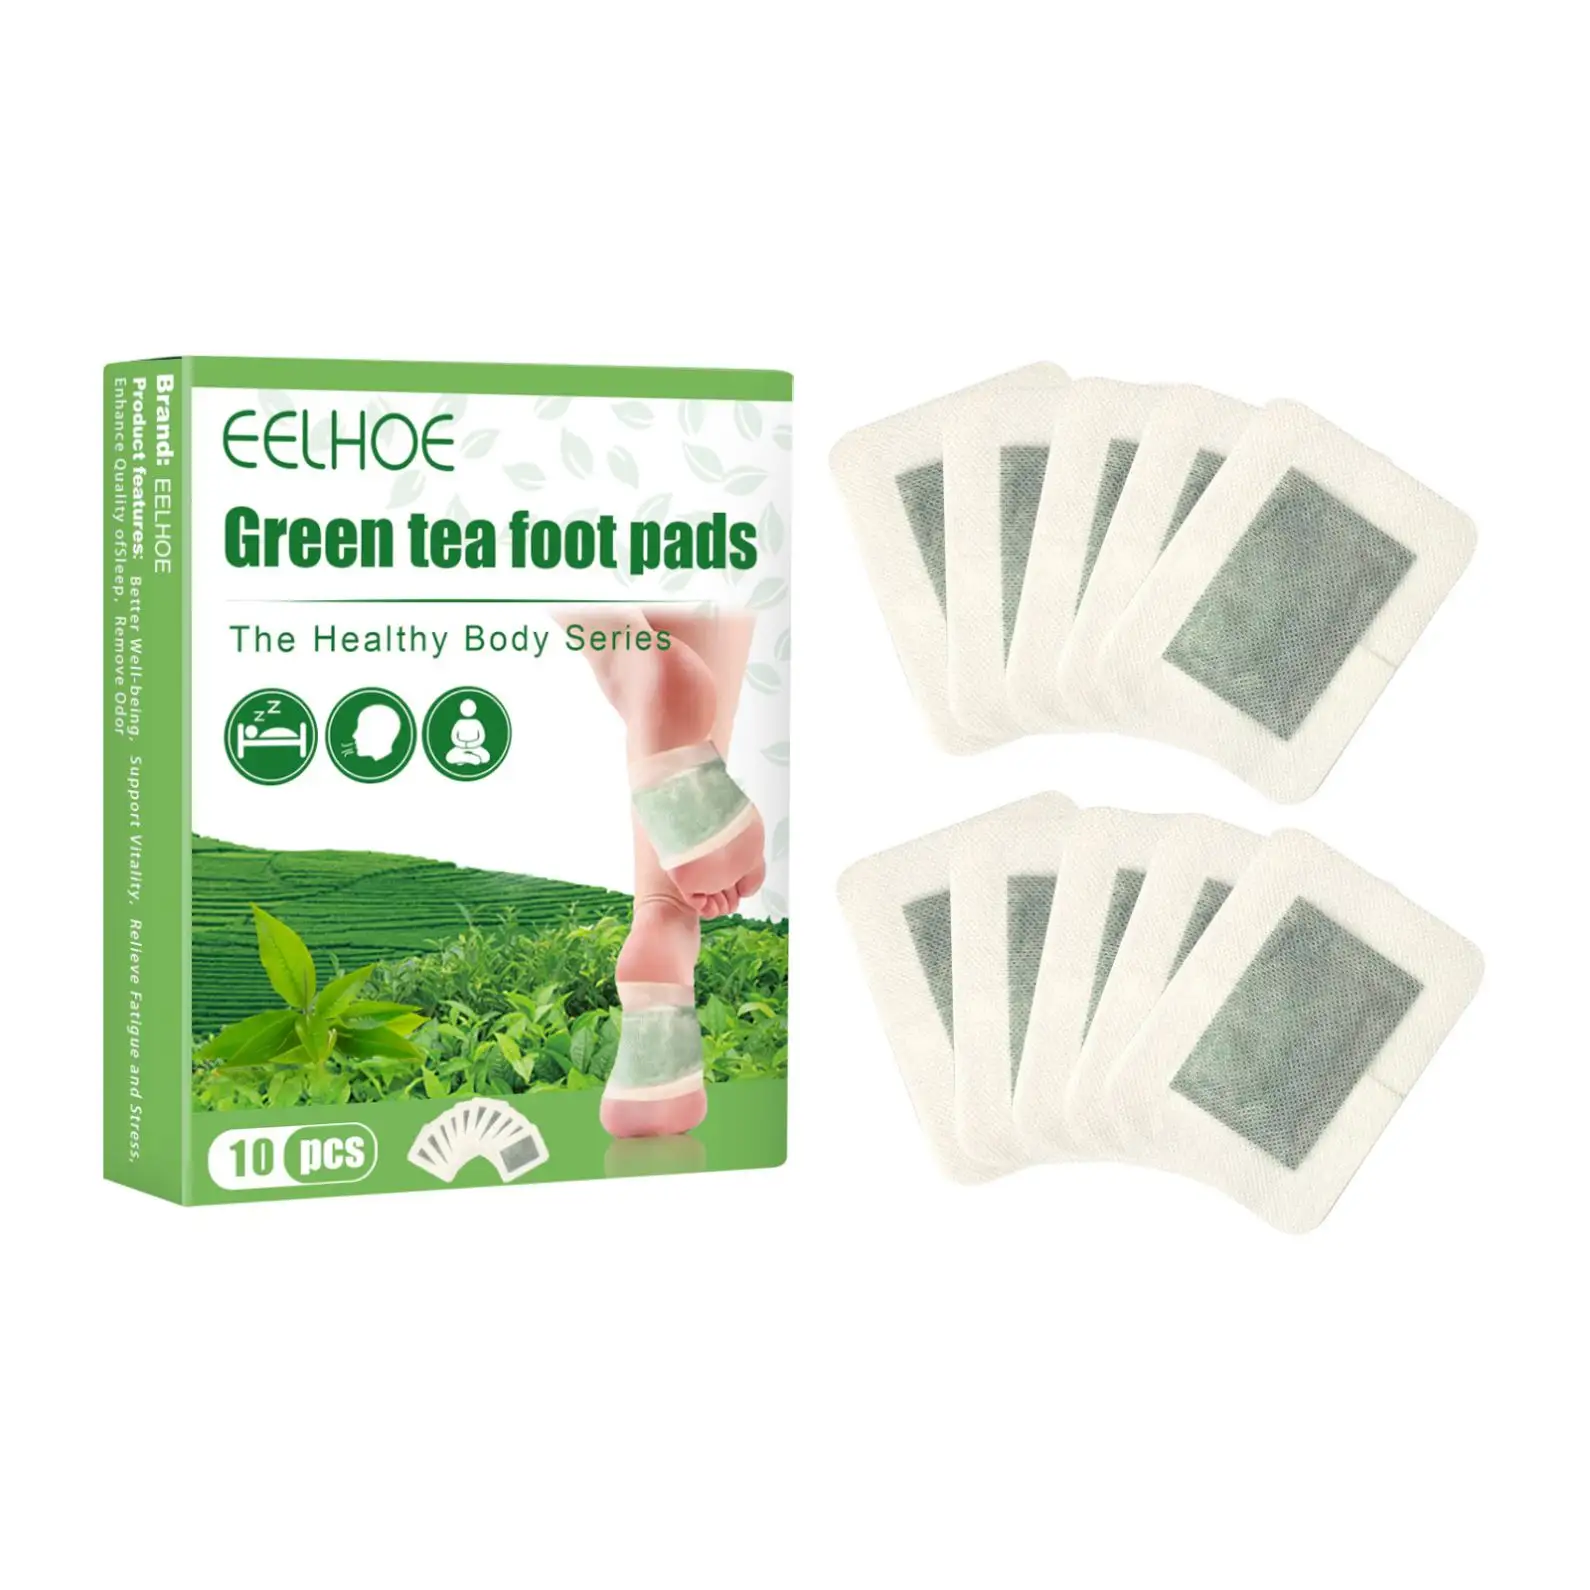 EELHOE ירוק תה רגל רפידות ירוק תה תיקוני רגל detox לשפר שינה עייפות הקלה רגל טיפול 12 יח'\שקית